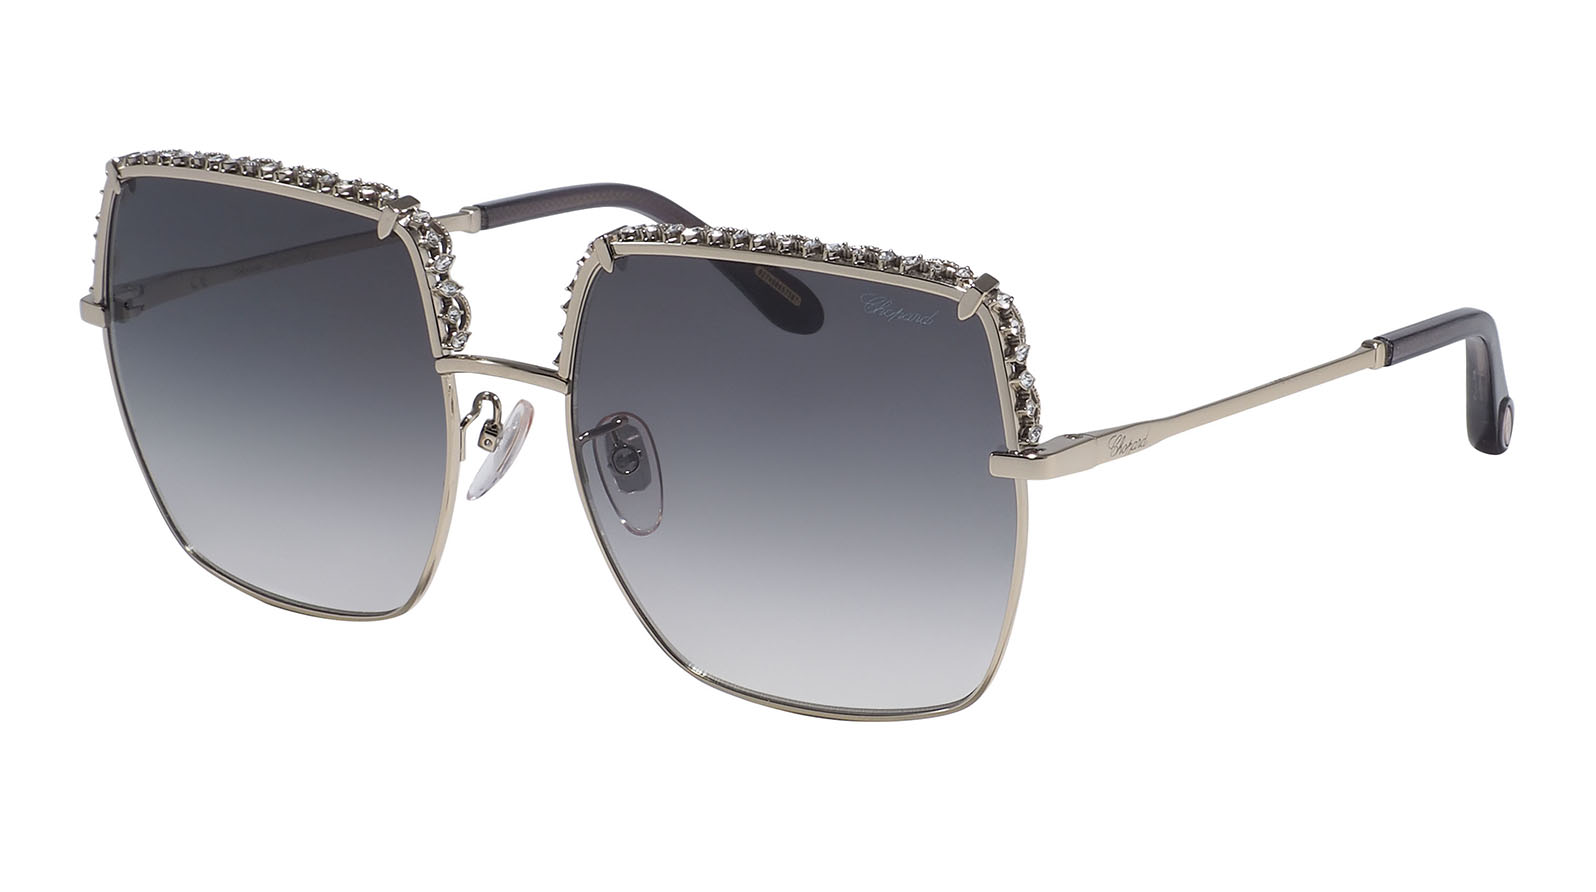 Chopard F12S 594K lukky солнцезащитные очки круглые с декором